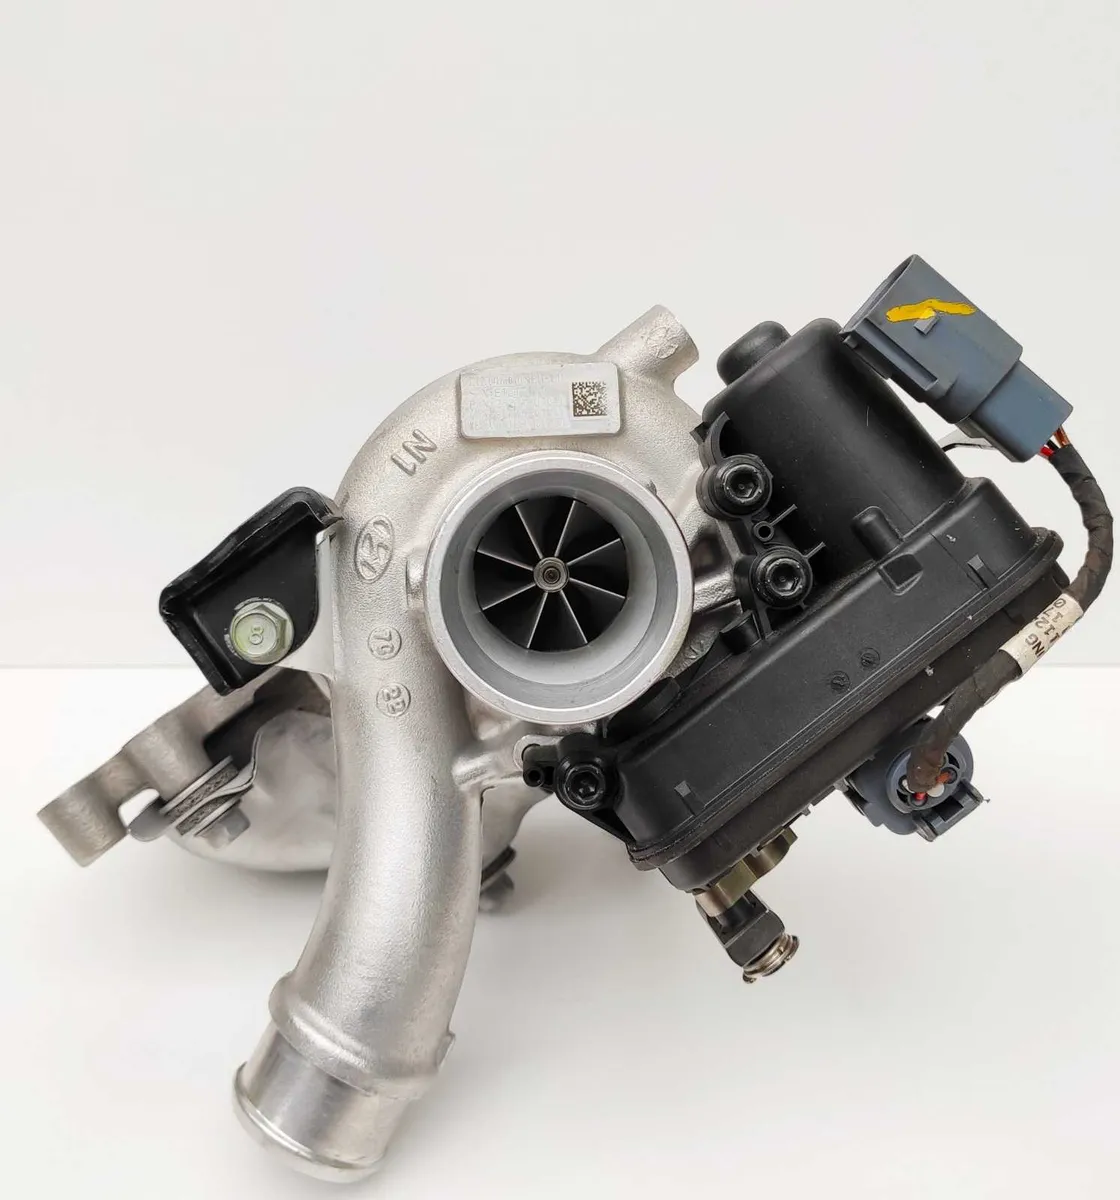 Hyundai Turbo - Turbocharger - Image 1